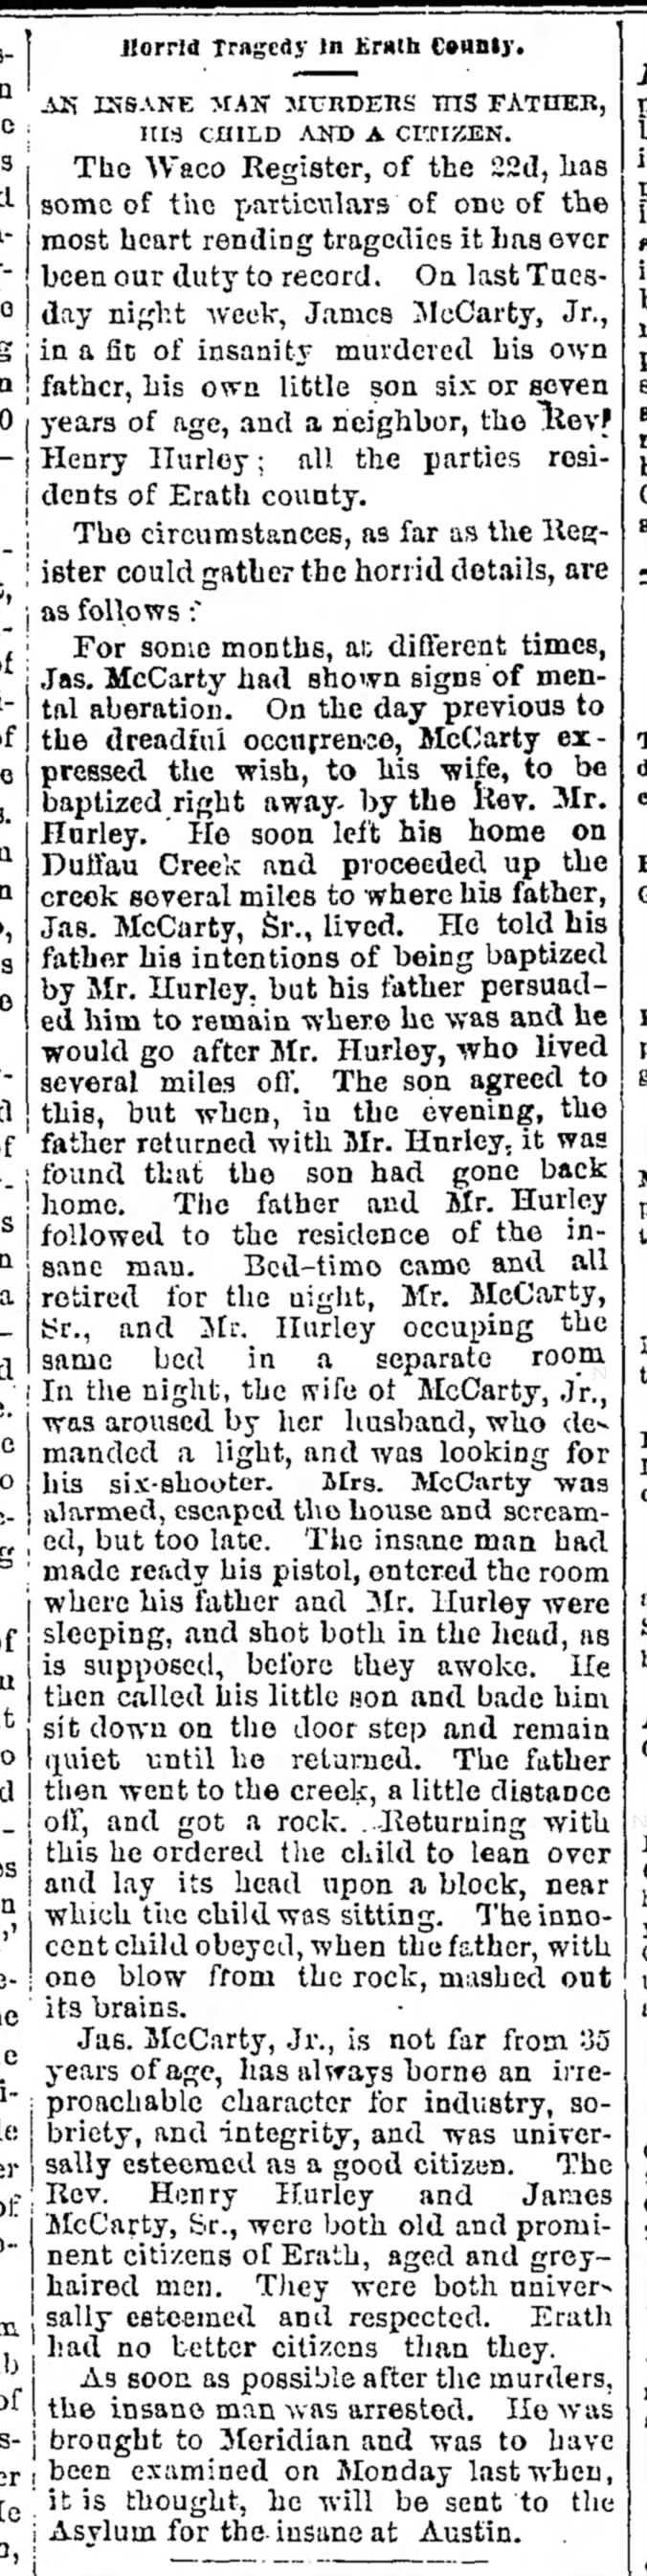 Henry Hurley Murder.1869